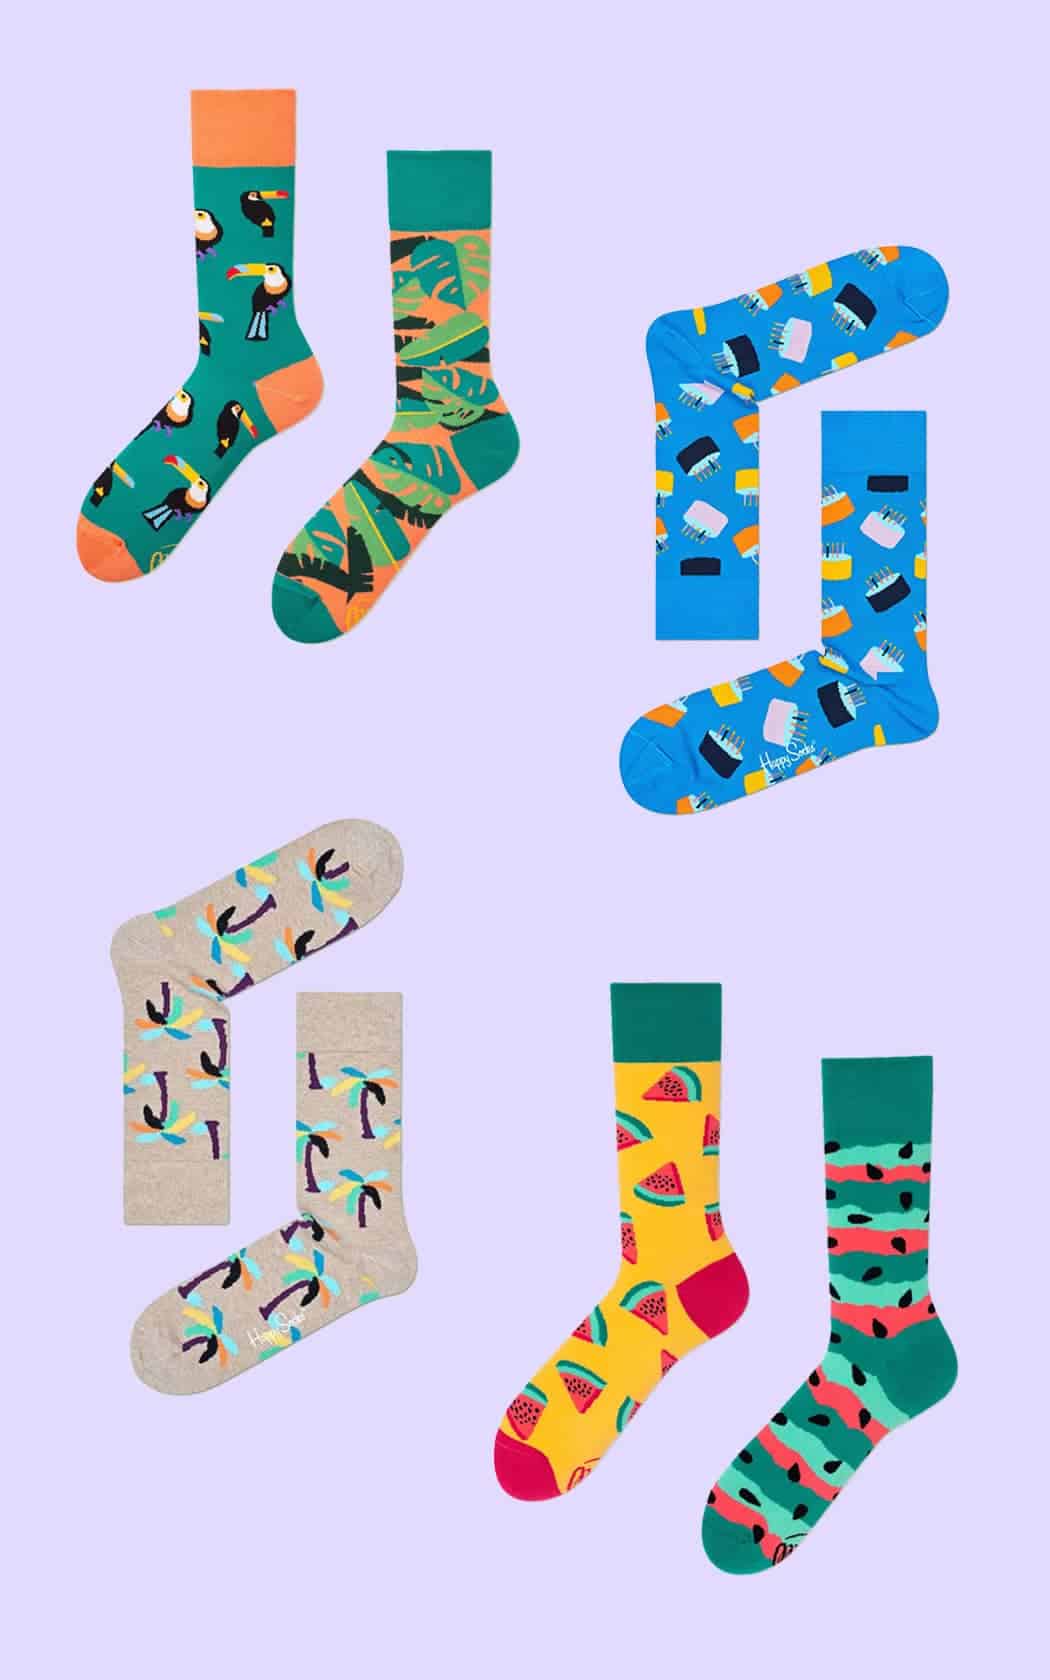 Leuke sokken - 5 x inspiratie voor toffe sokken - Food fauna flora - door Laurens M - via AGMJ.be